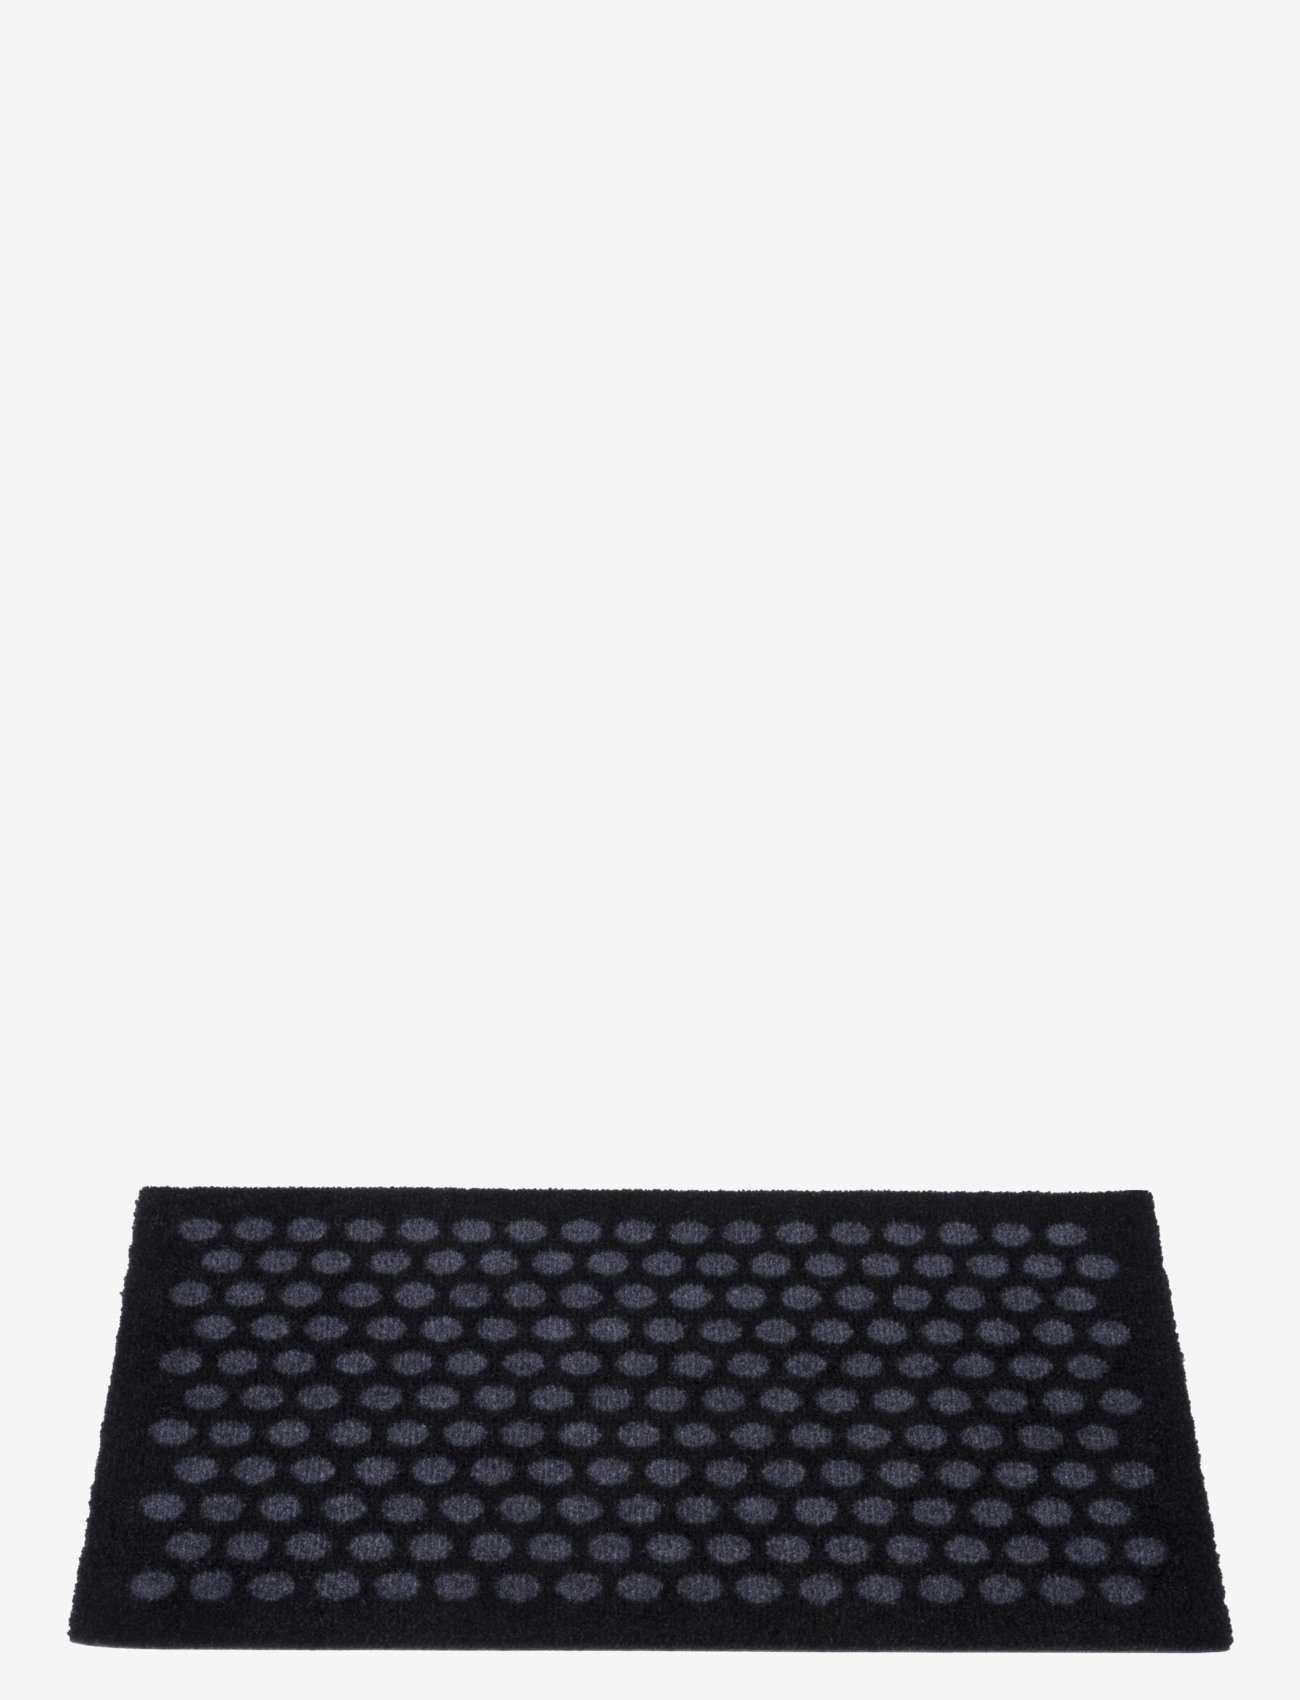 tica copenhagen - Floormat polyamide, 60x40 cm, dot design - die niedrigsten preise - black/grey - 1